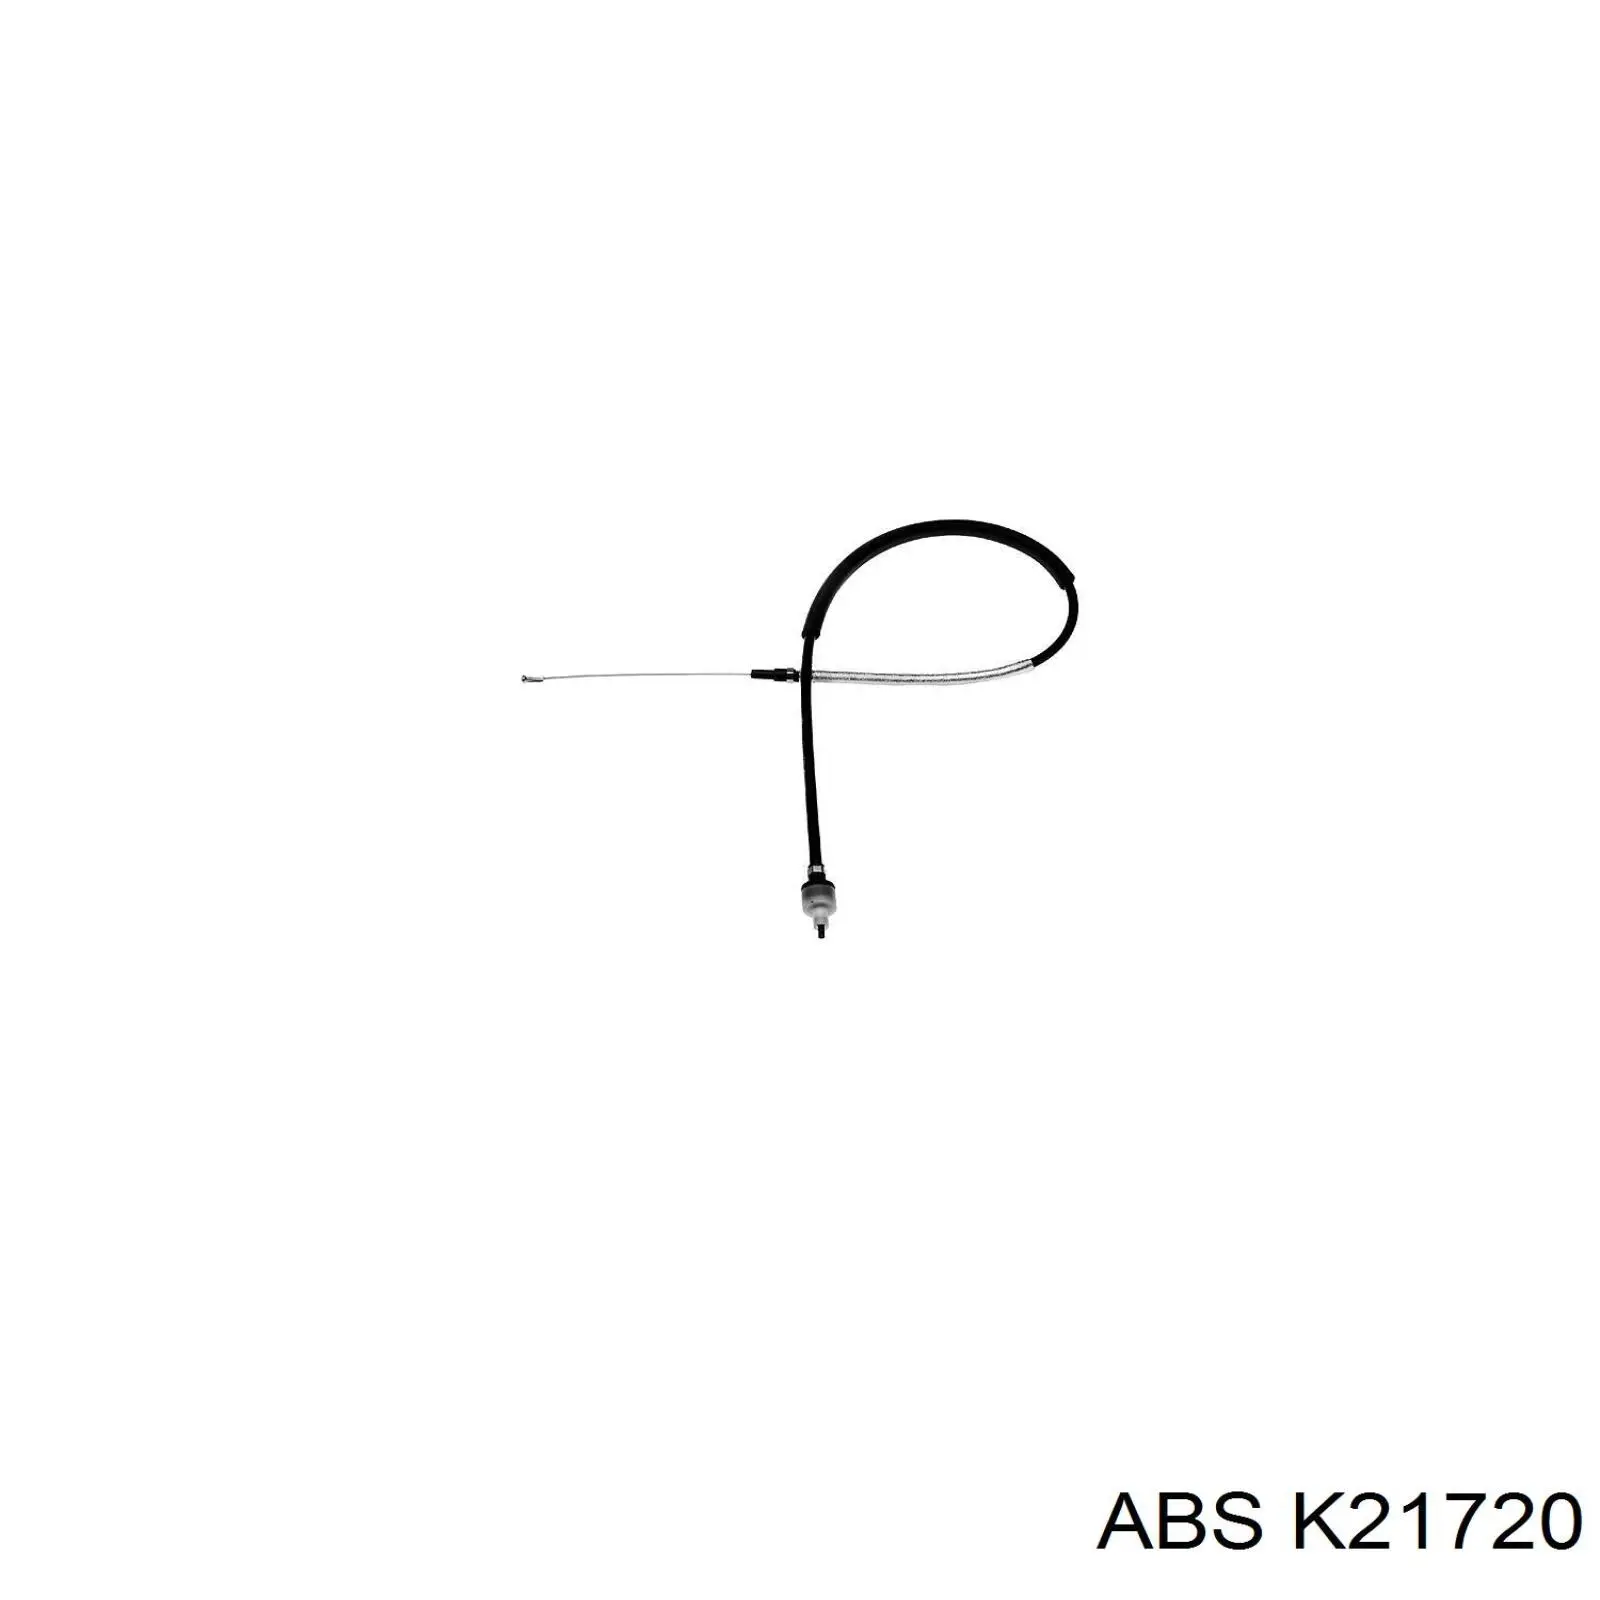 K21720 ABS cable de embrague